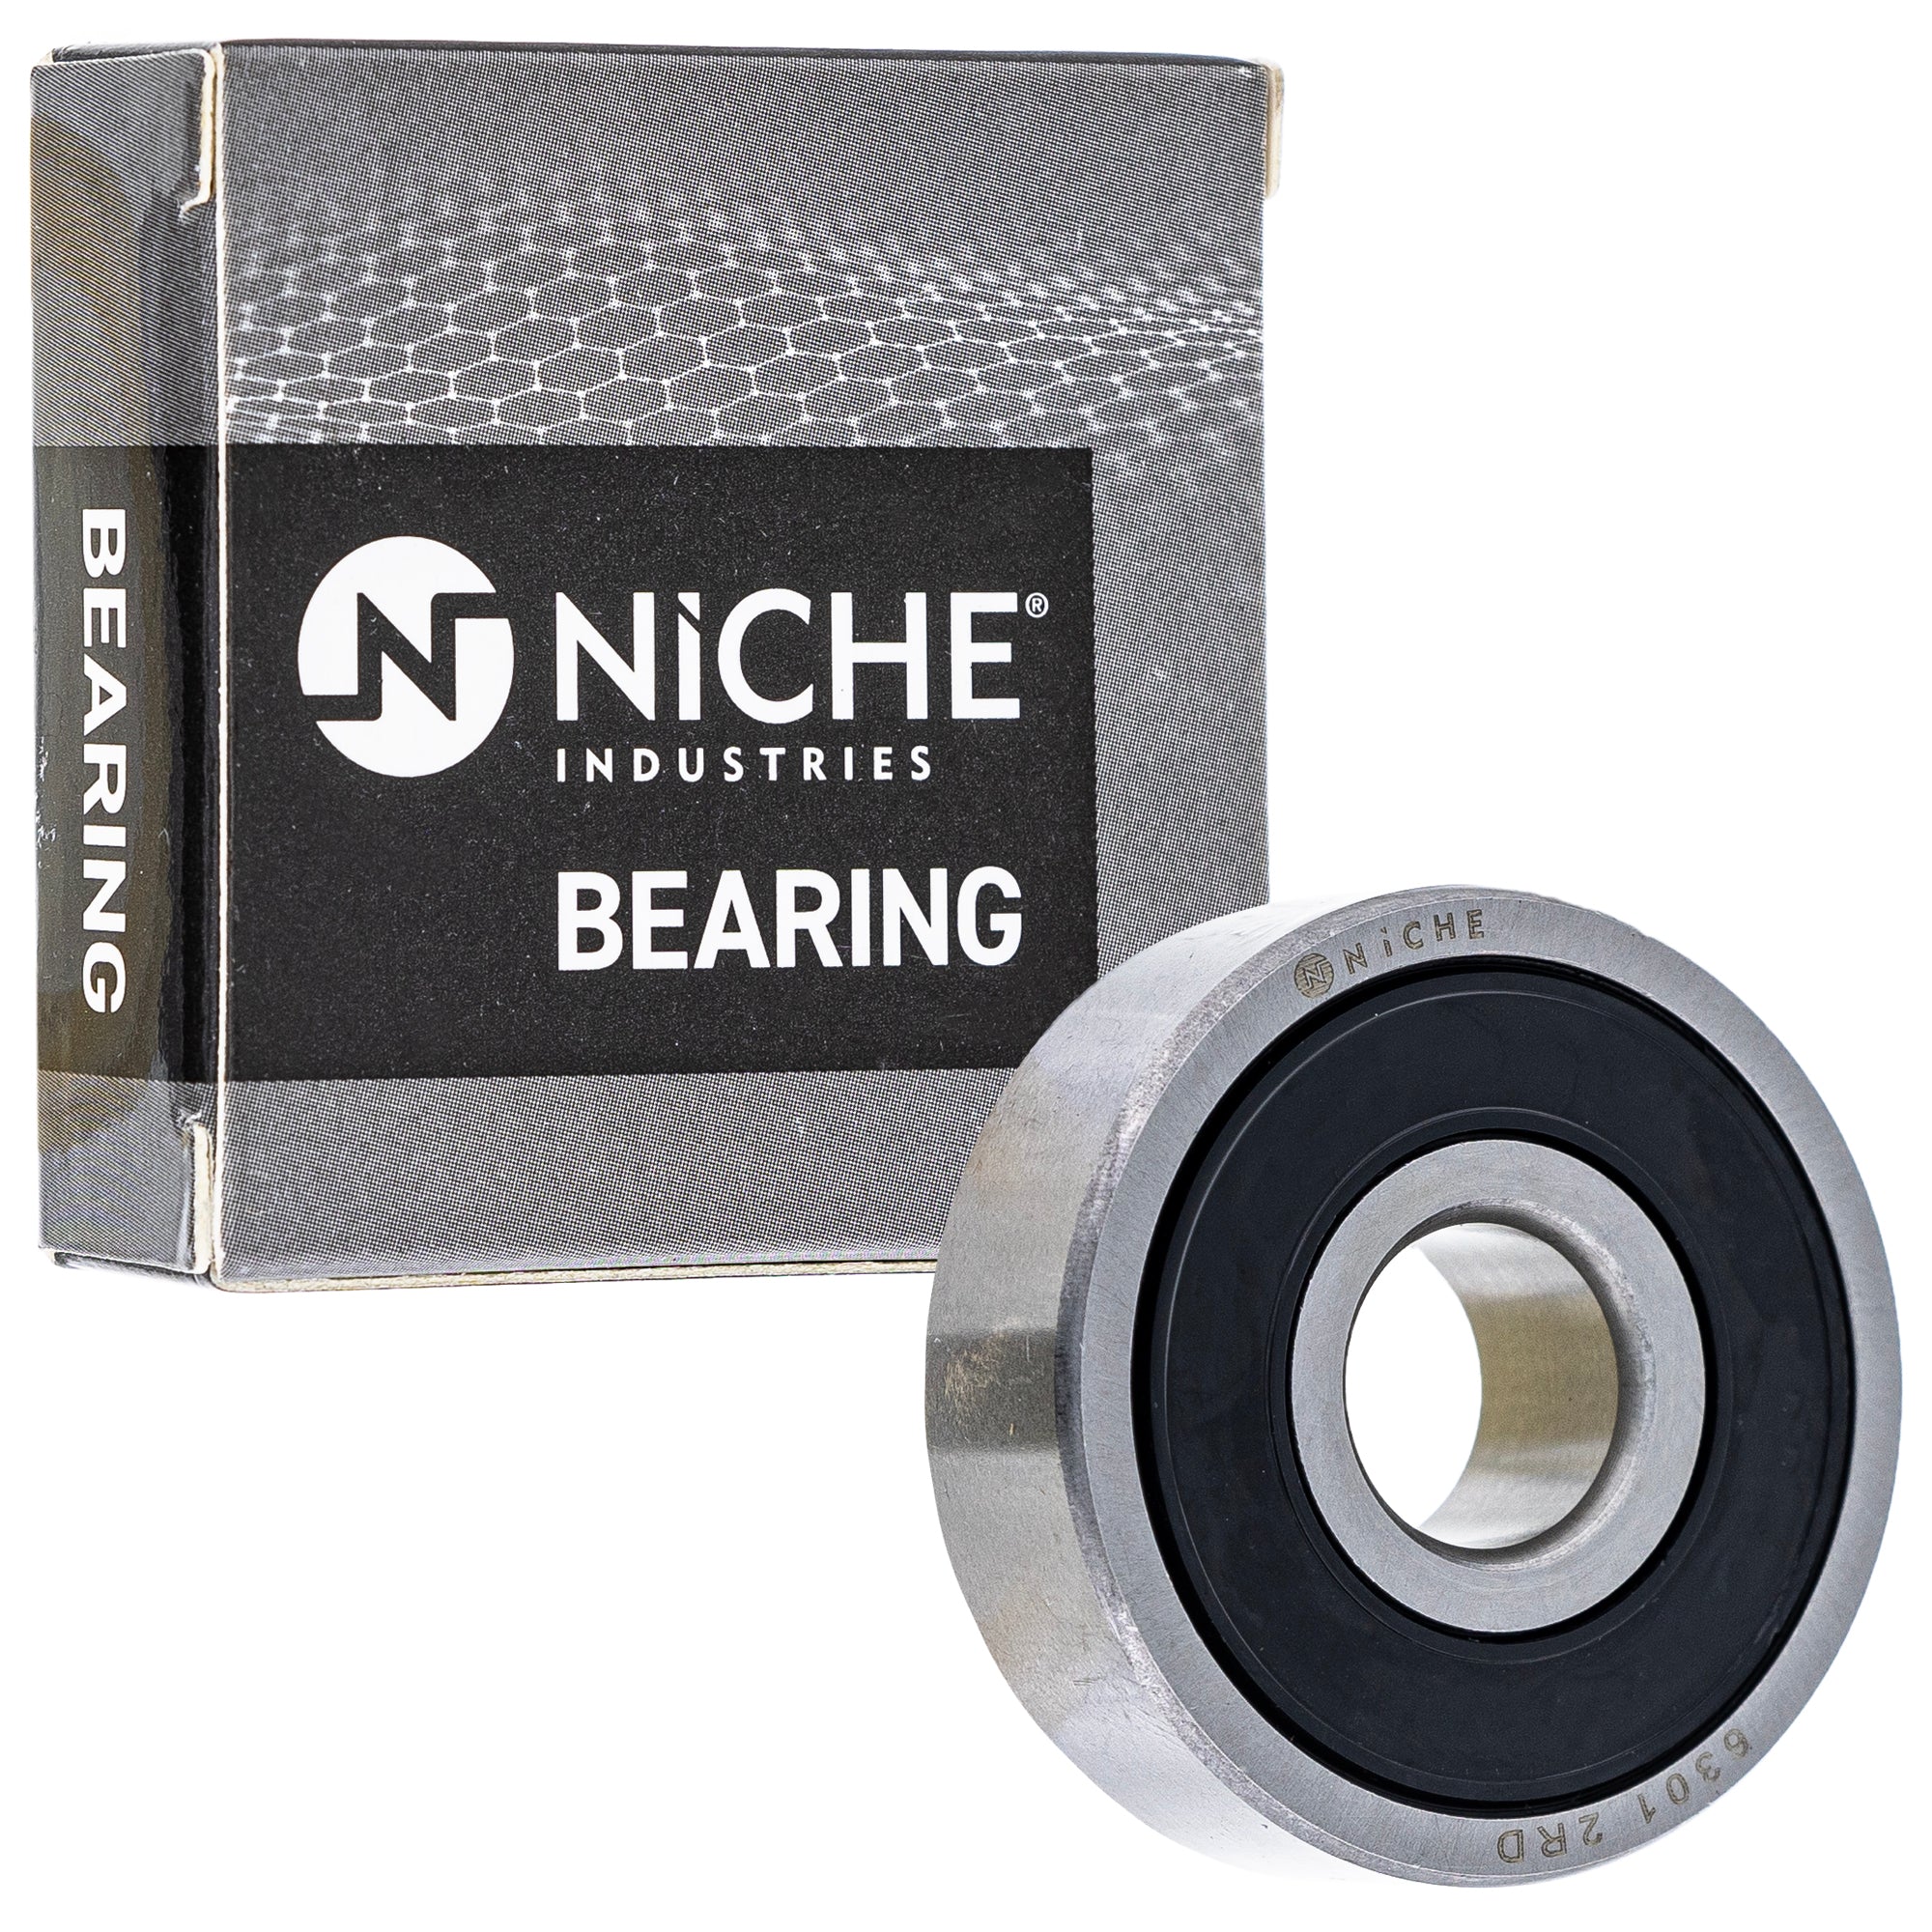 NICHE 519-CBB2342R Bearing 2-Pack for zOTHER XR80R XR80 XR75 XR70R